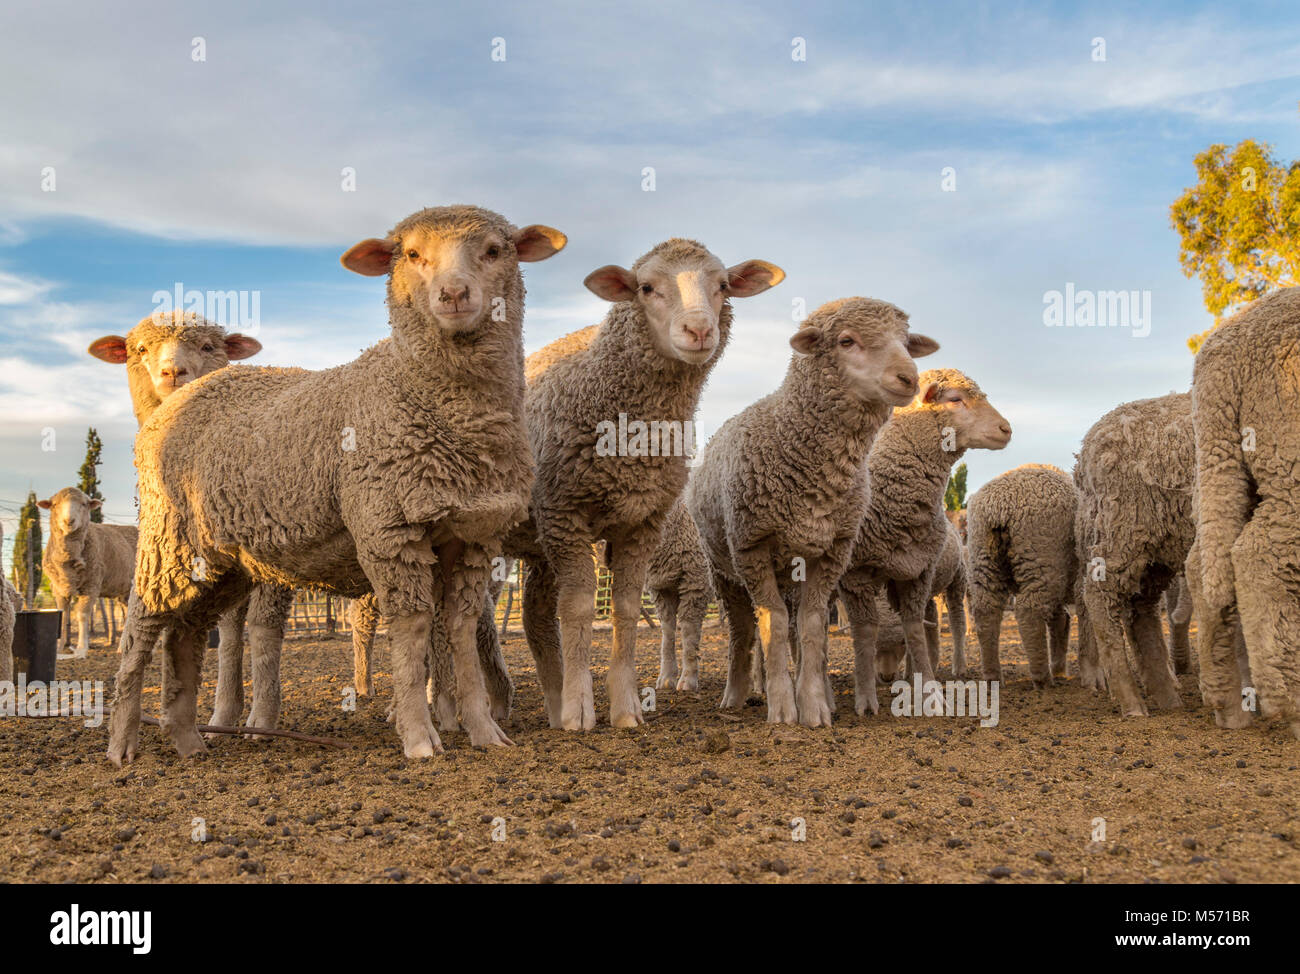 Rebaño de ovejas Merino jóvenes parados en un kraal en una granja de karoo Foto de stock